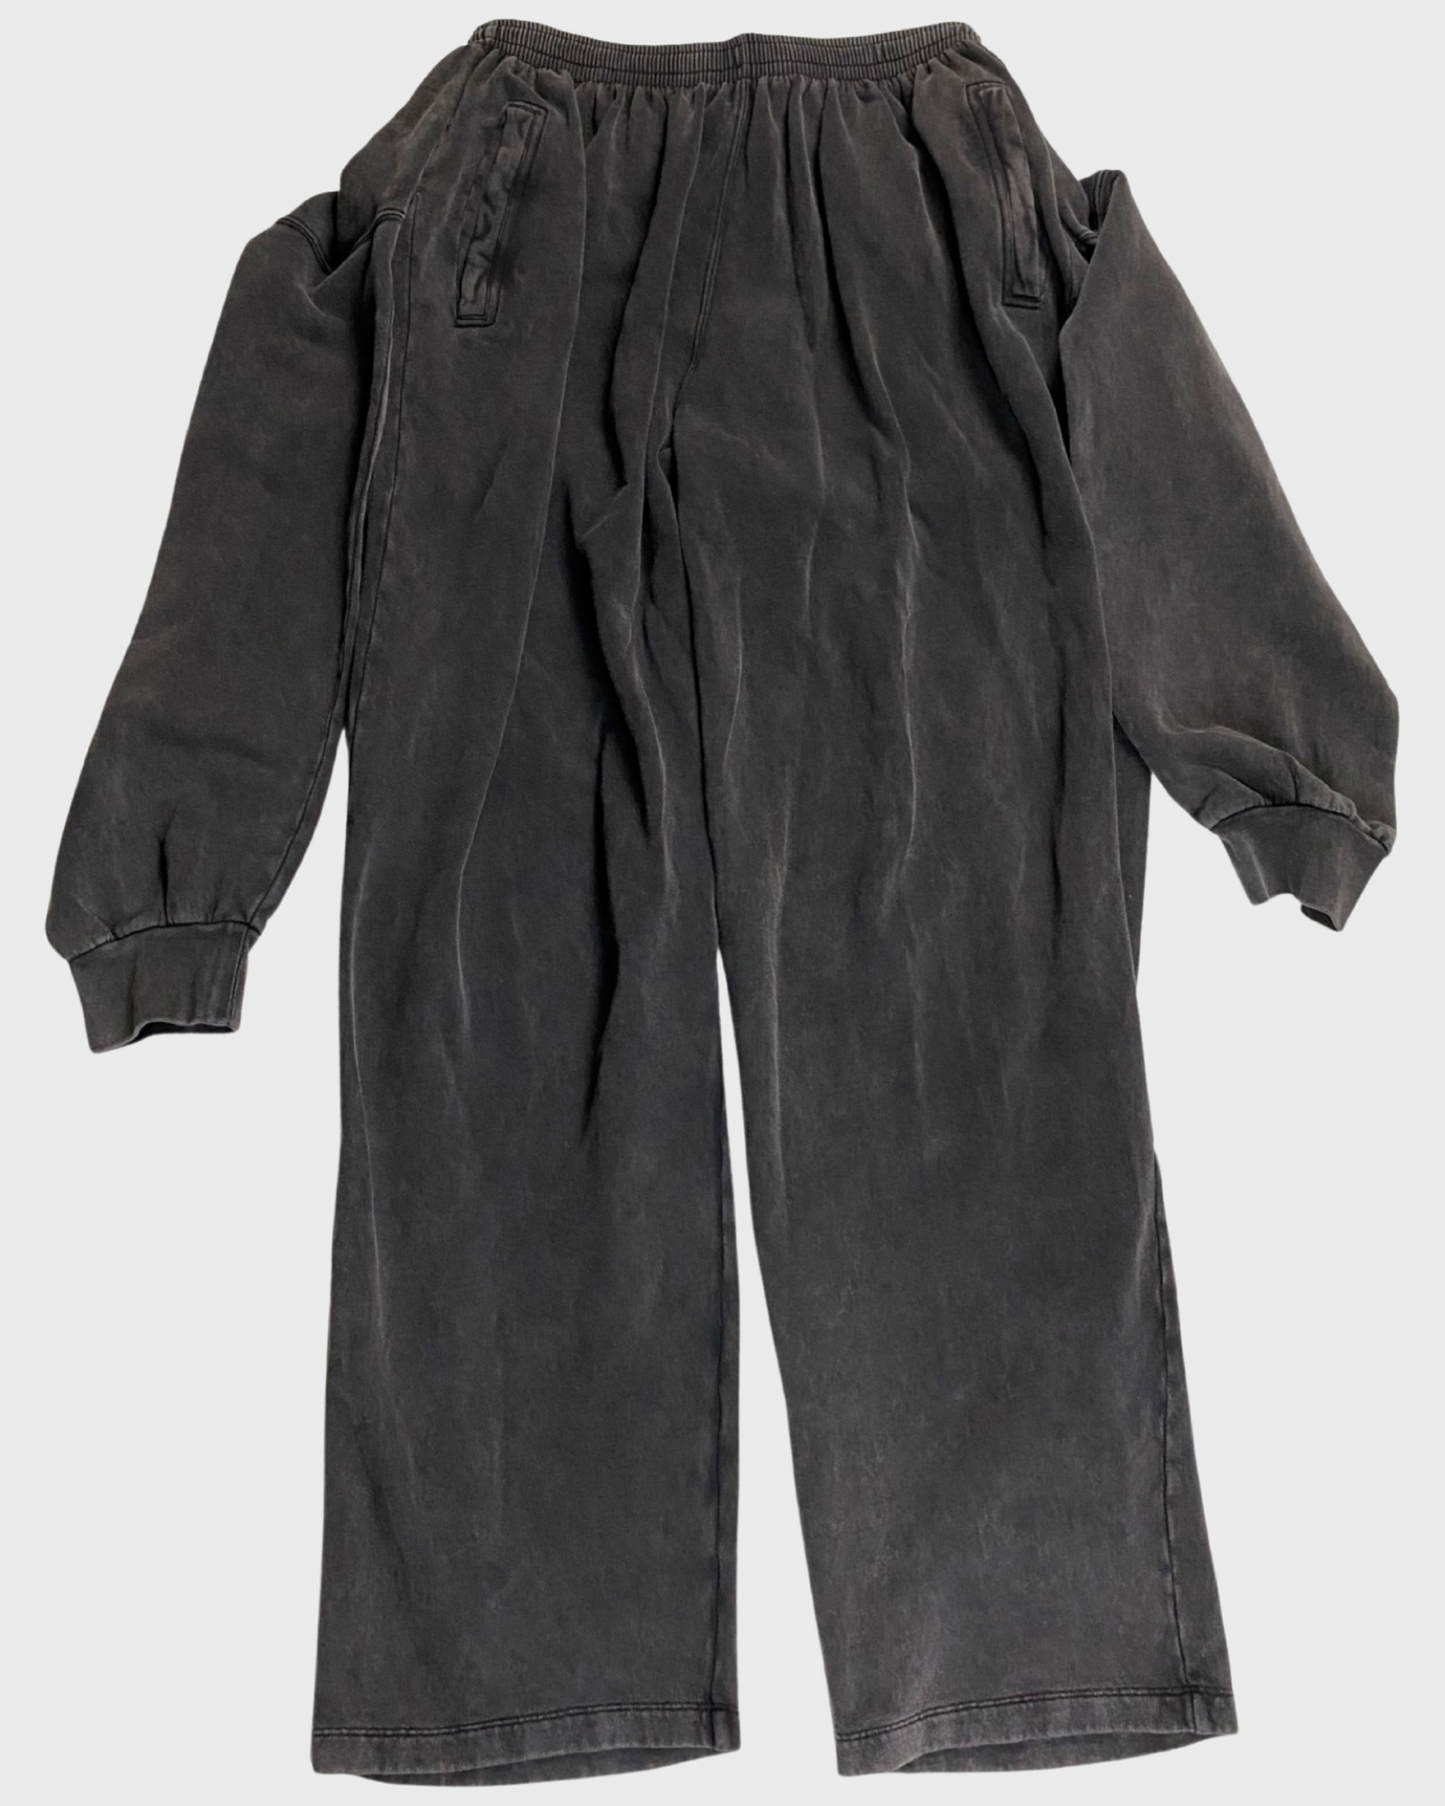 Balenciaga tied up sweater/crewneck sweatpants grey SZ:S